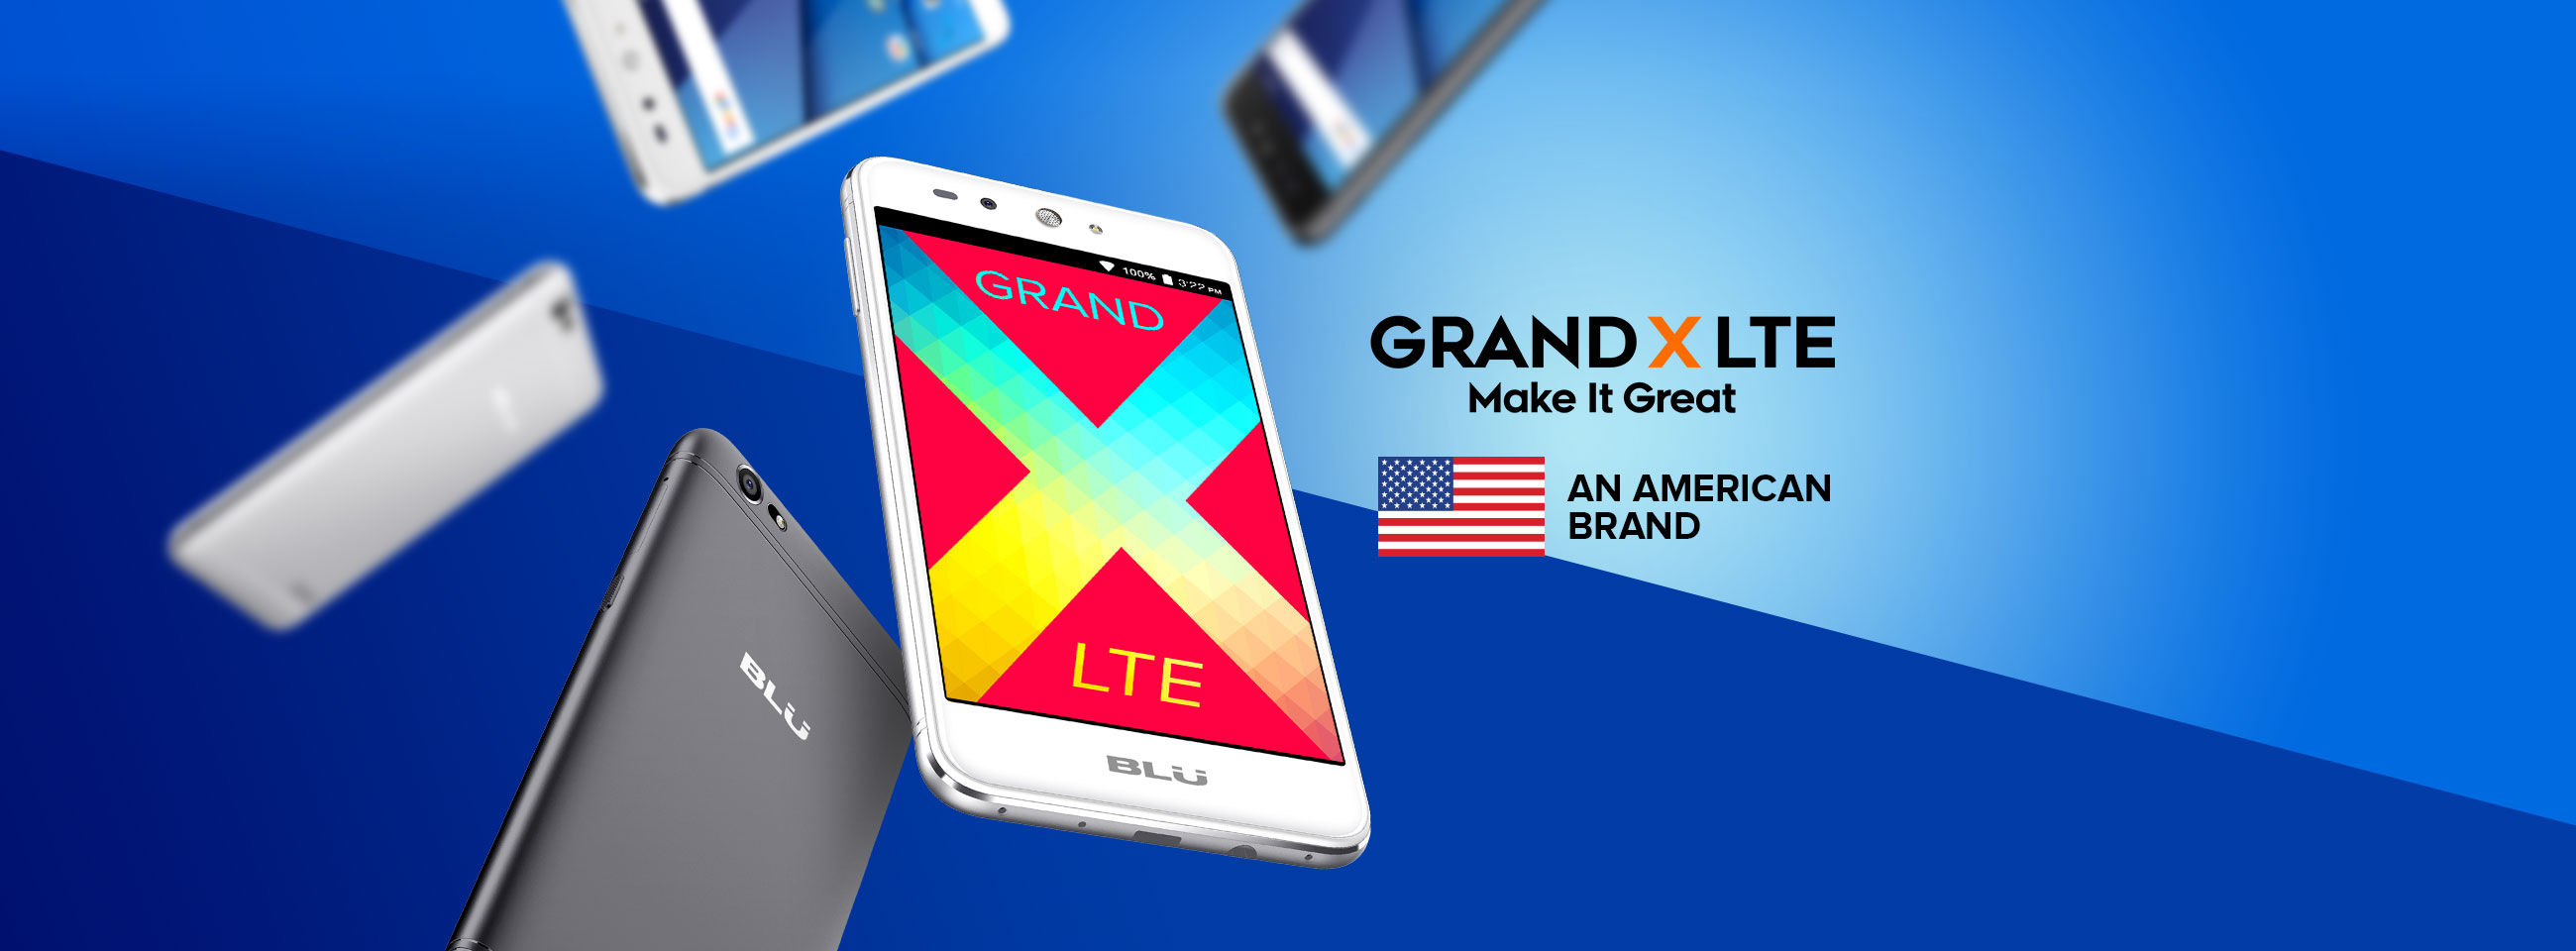 端末レビュー 12 480円の格安スマホ Blu Grand X Lte 写真付きレビュー Line Mobile 公式ブログ